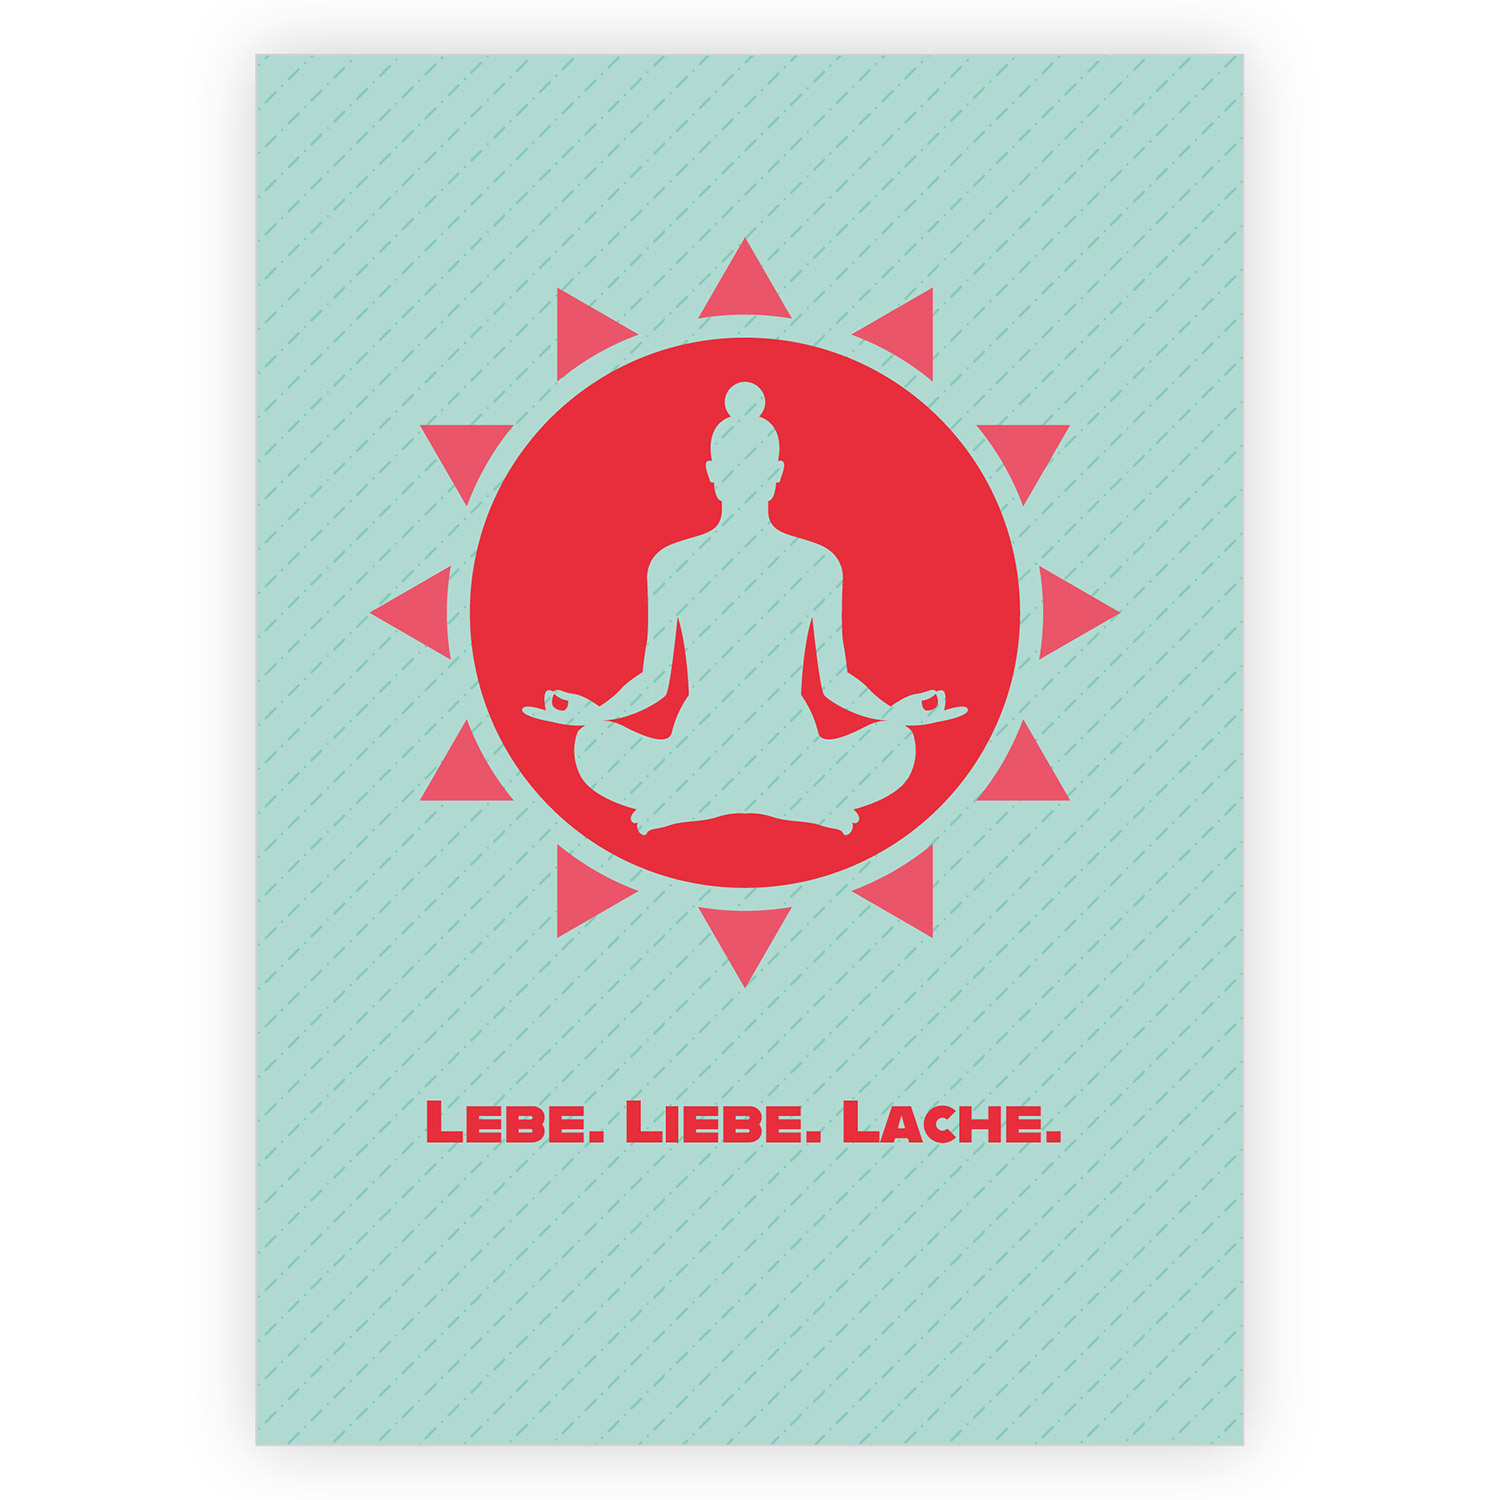 Yoga Entspannungs Motivations-Klappkarte:  Lebe. Liebe. Lache nachhaltig produzierte Klappkarte inklusive Umschlag made  in germany von Kartenkaufrausch.de